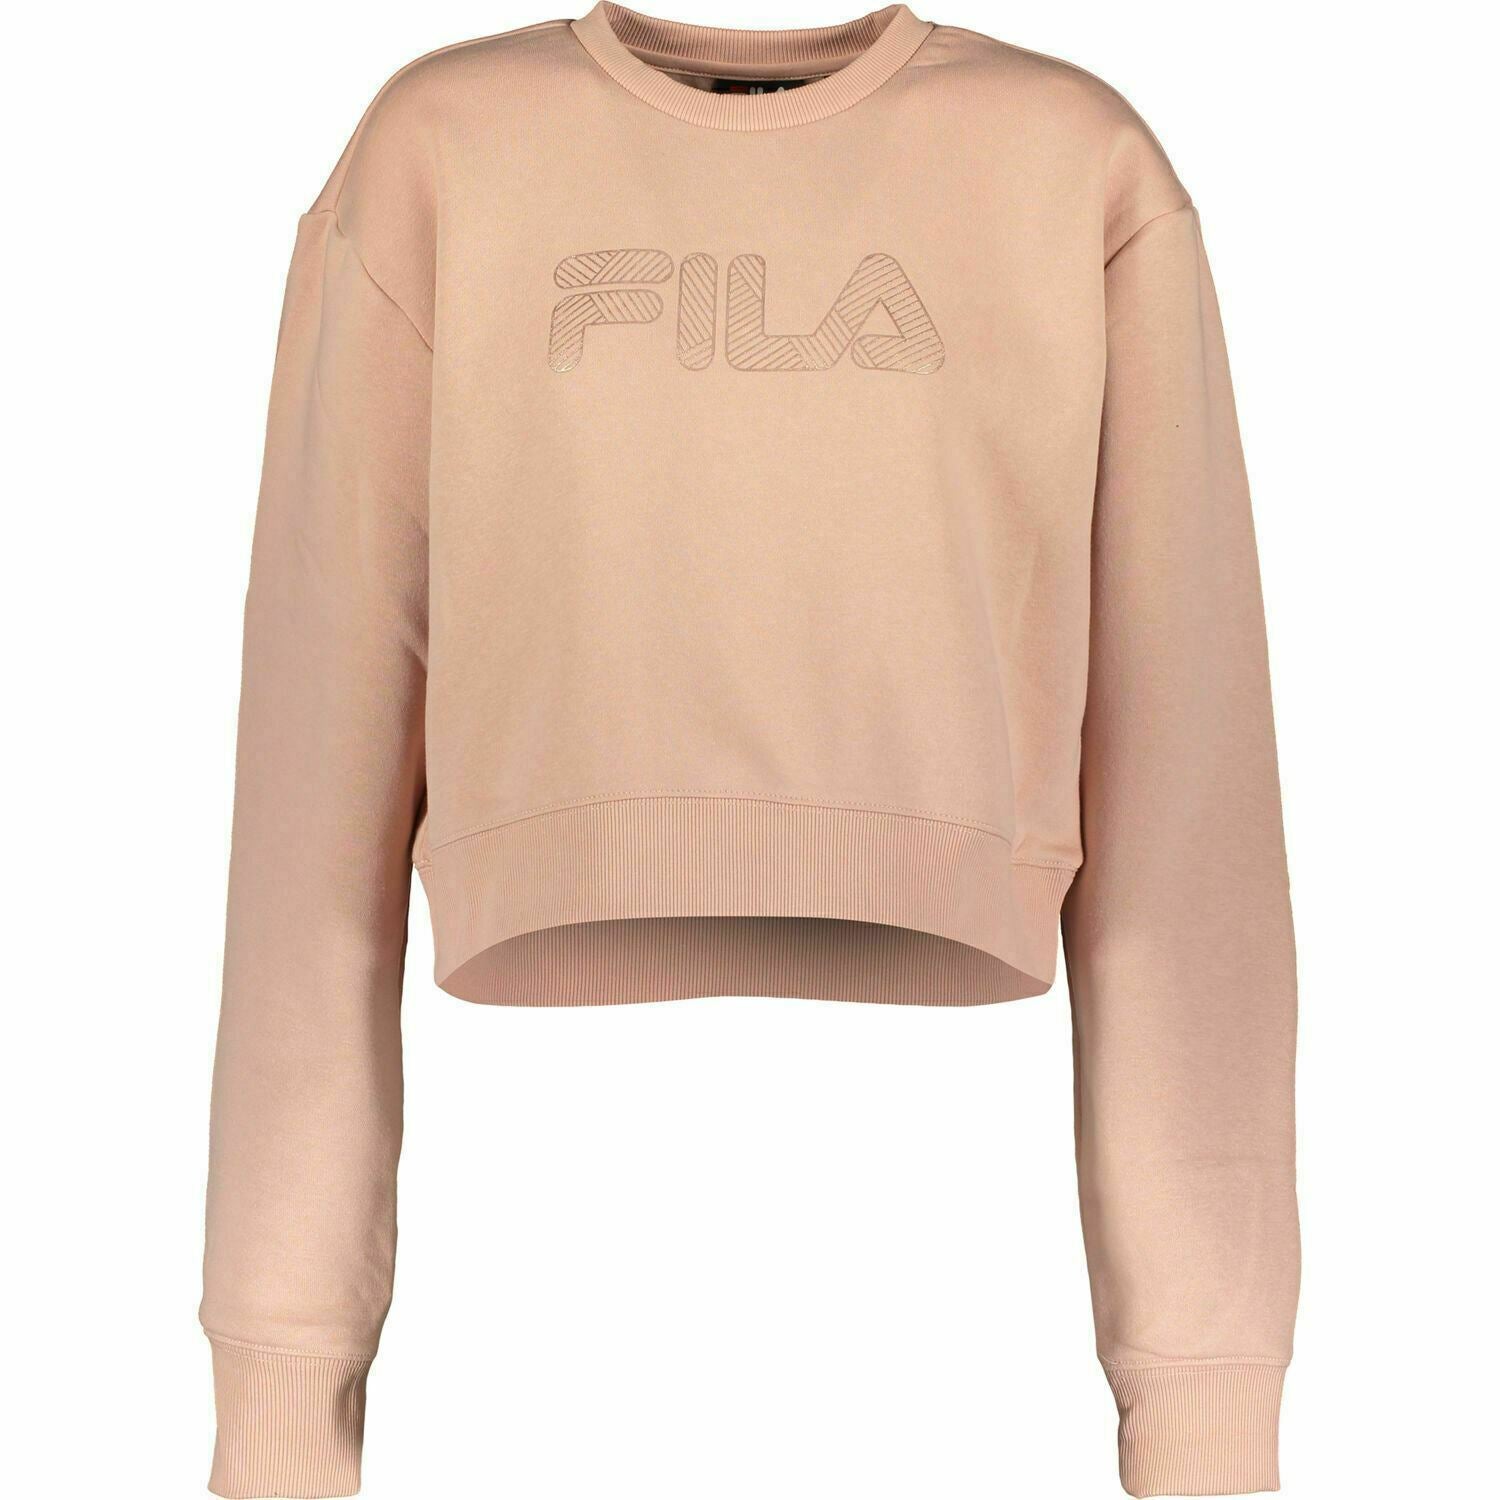 FILA Women's DOLLY Cropped Sweatshirt Top, Misty Rose, size XS